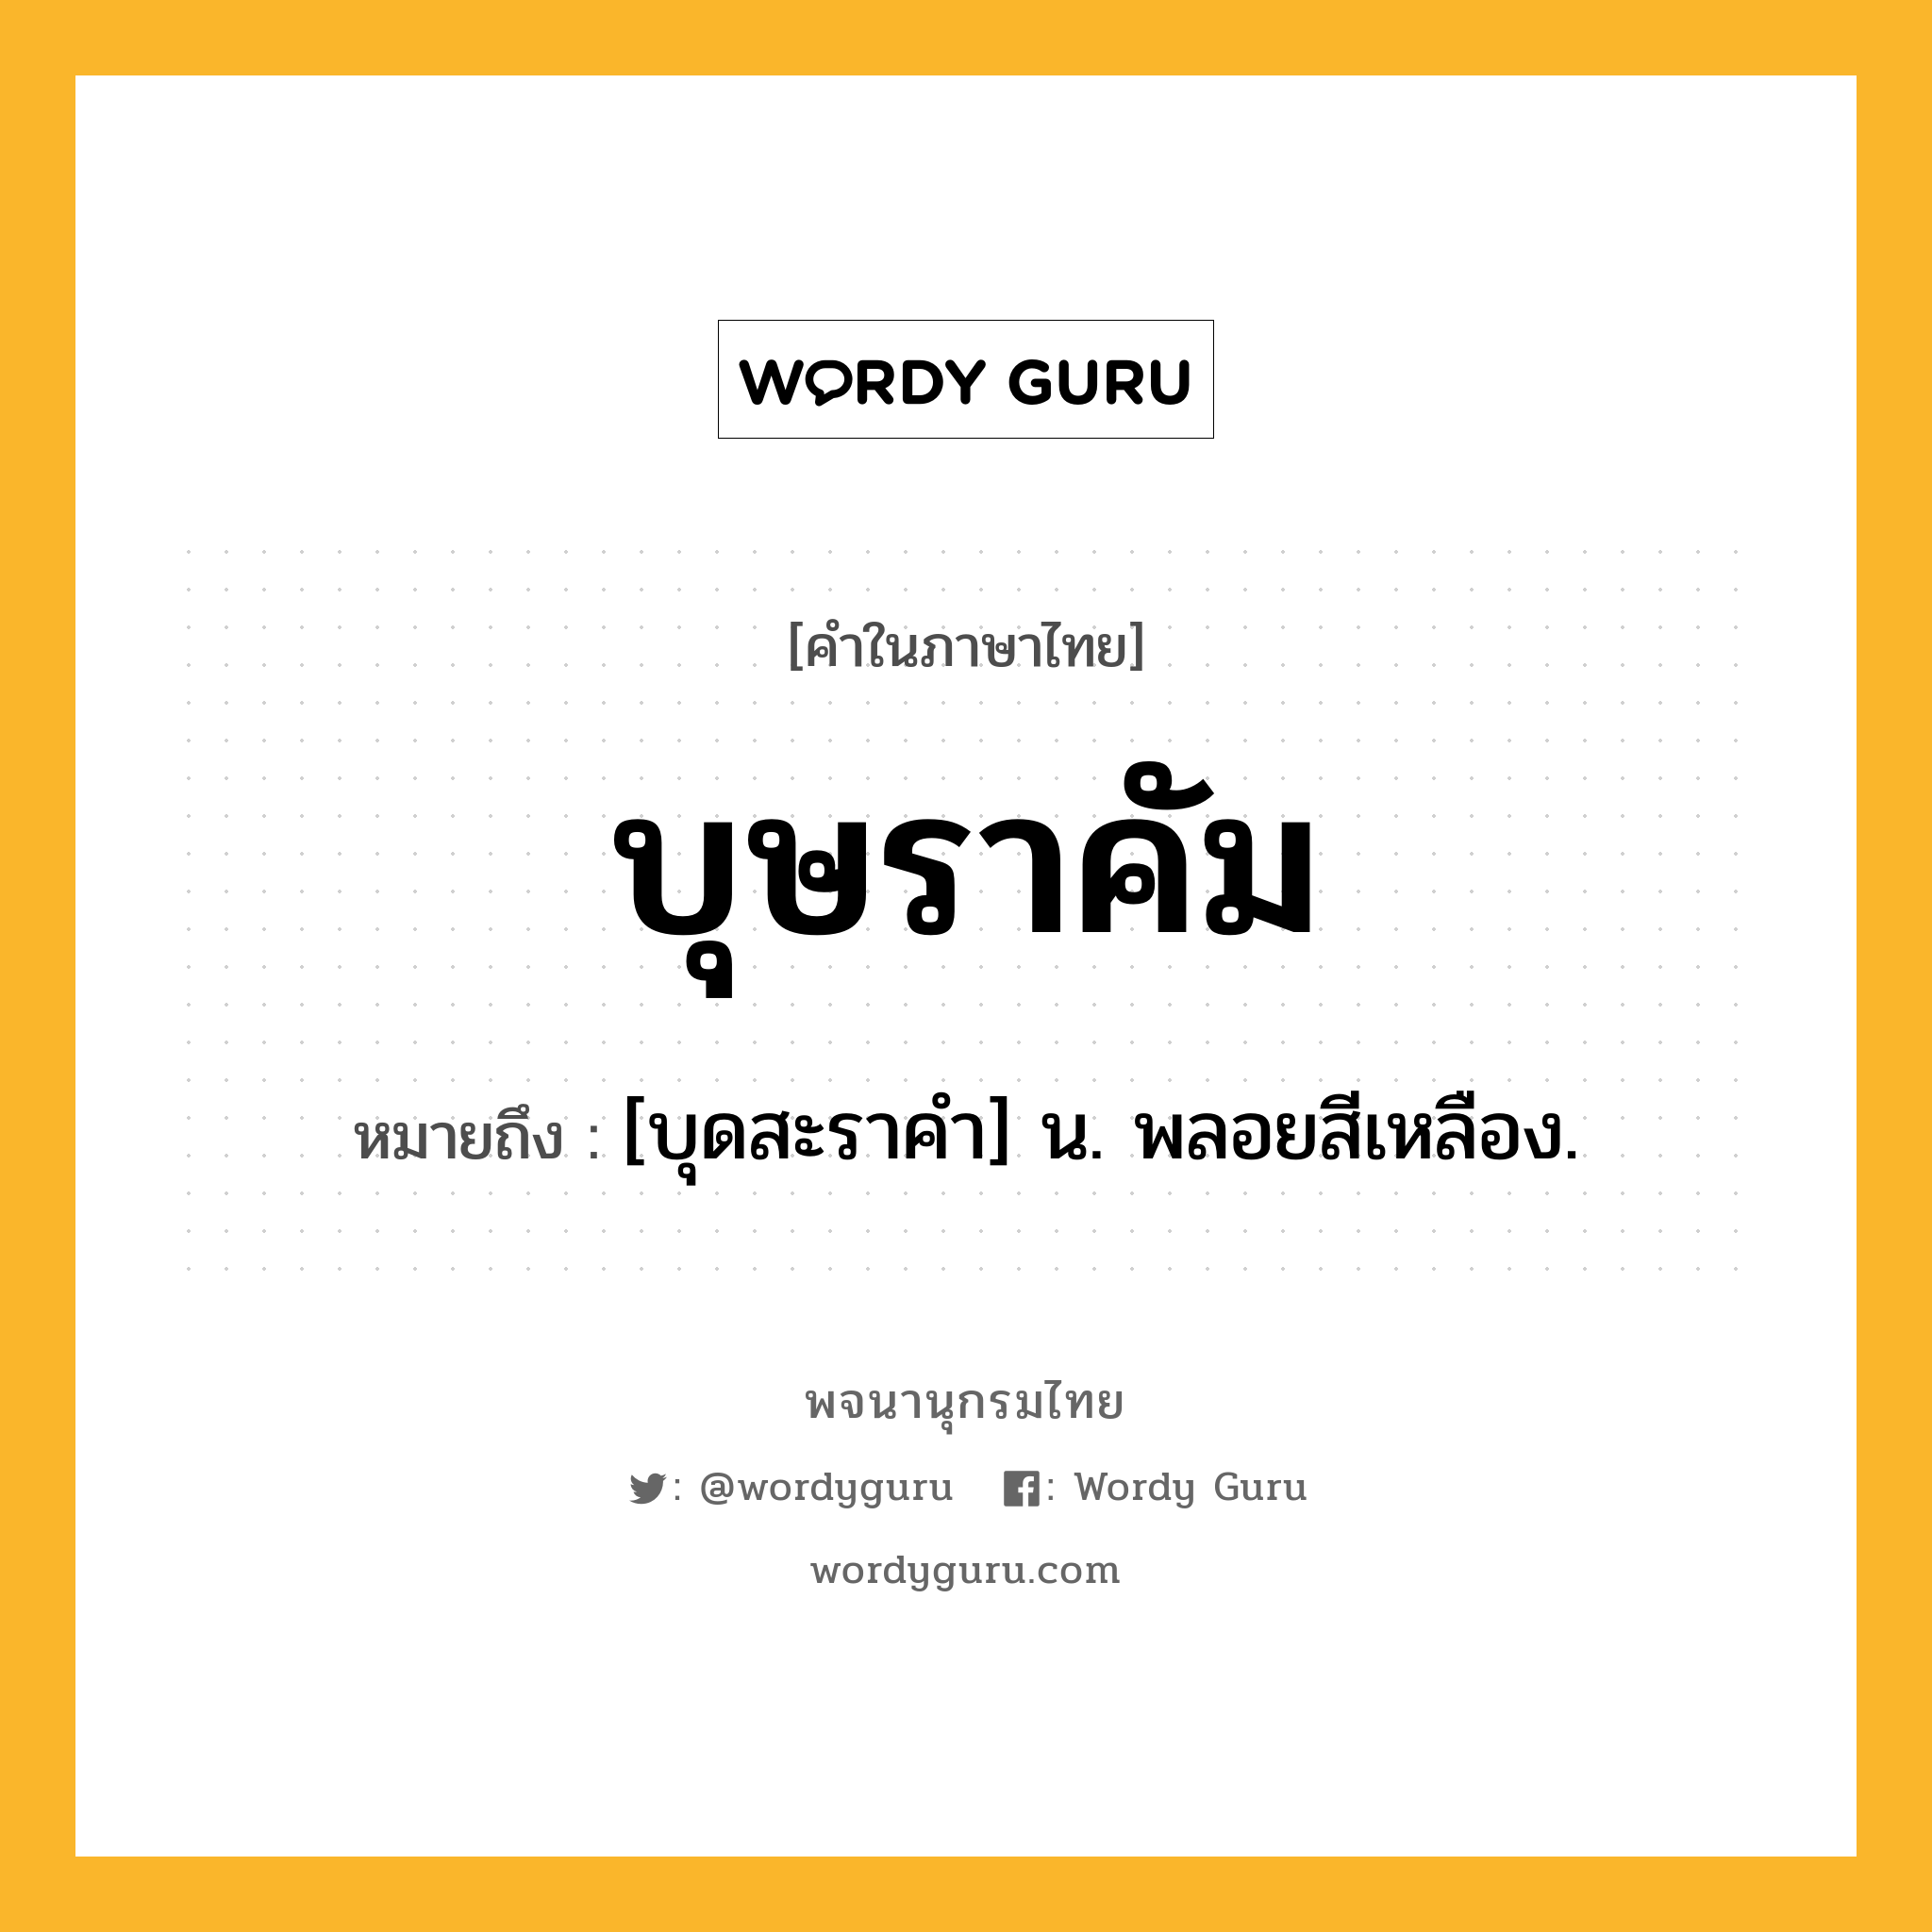 บุษราคัม หมายถึงอะไร?, คำในภาษาไทย บุษราคัม หมายถึง [บุดสะราคํา] น. พลอยสีเหลือง.